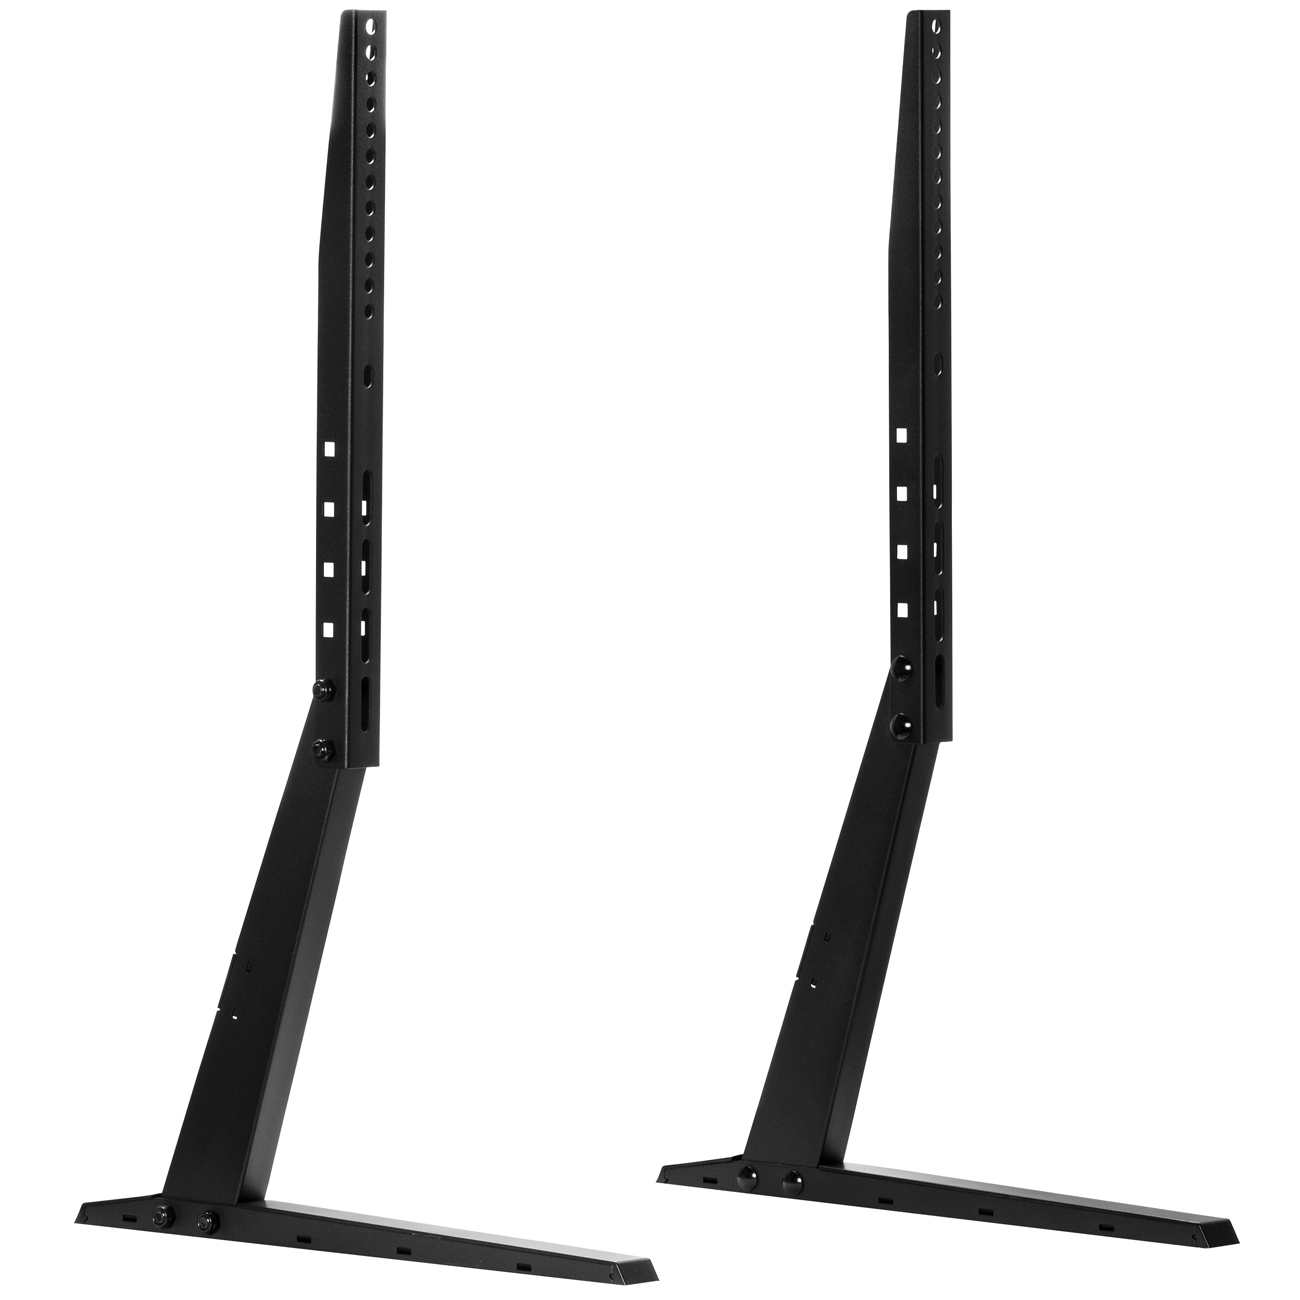 Ejoyous Universal TV Standfüße Höhenverstellbar 3 Ebenen x 60 mm Fernseher Beine Tisch Standfuß TV Füße für Flach-LED-LCD-Bildschirm TV Desktop Tischständerhalter 32“-70” 